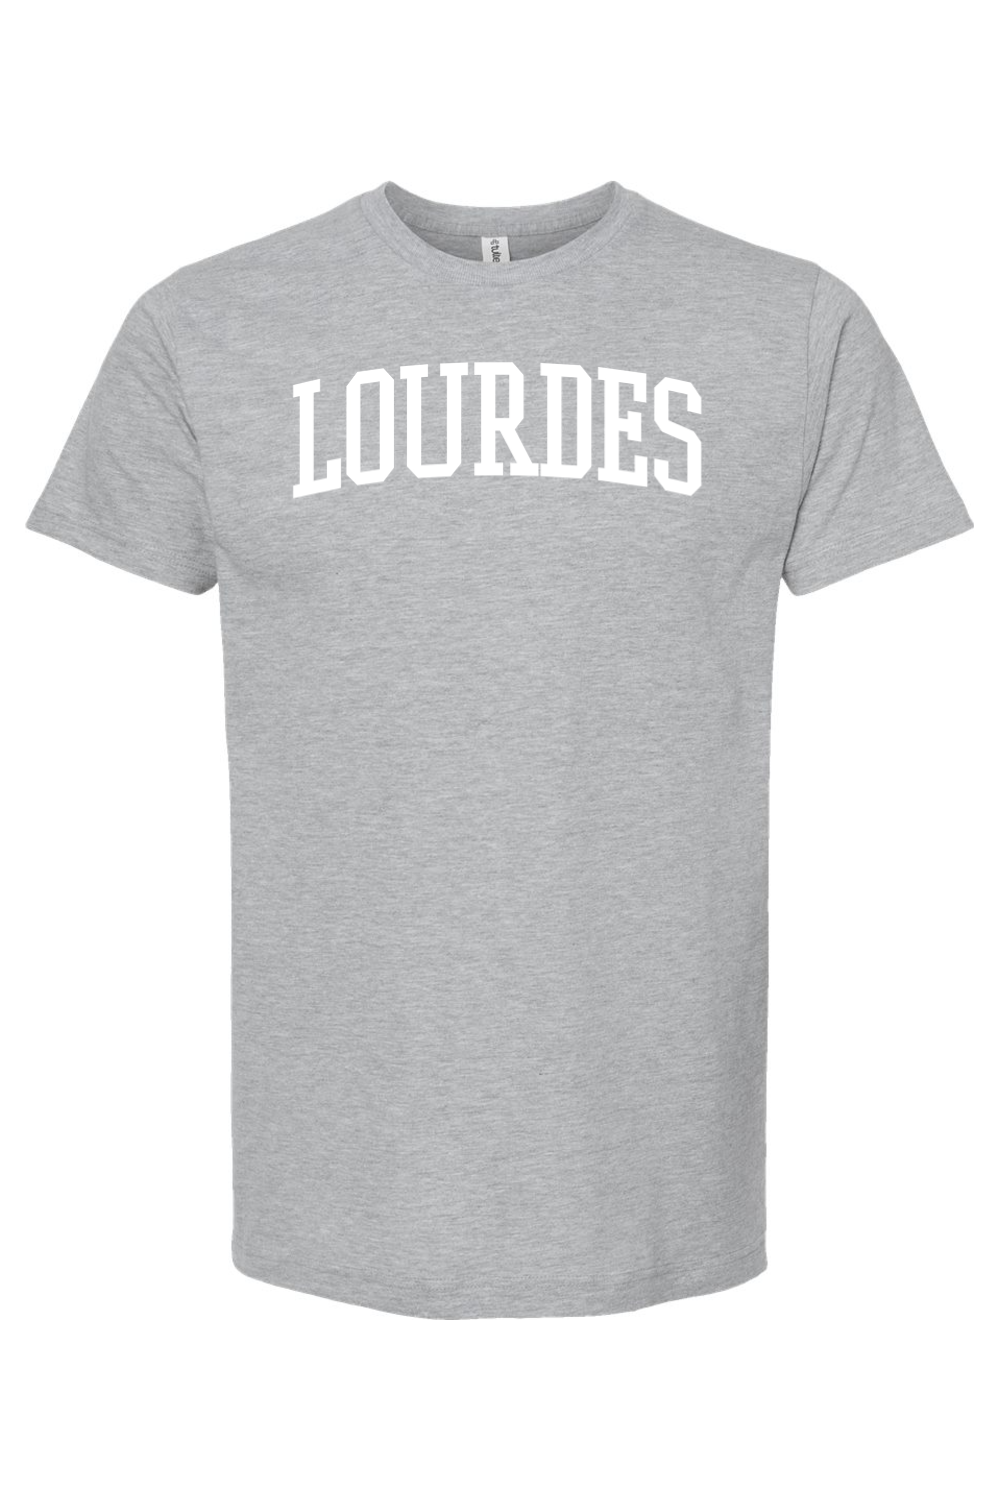 Lourdes - Collegiate